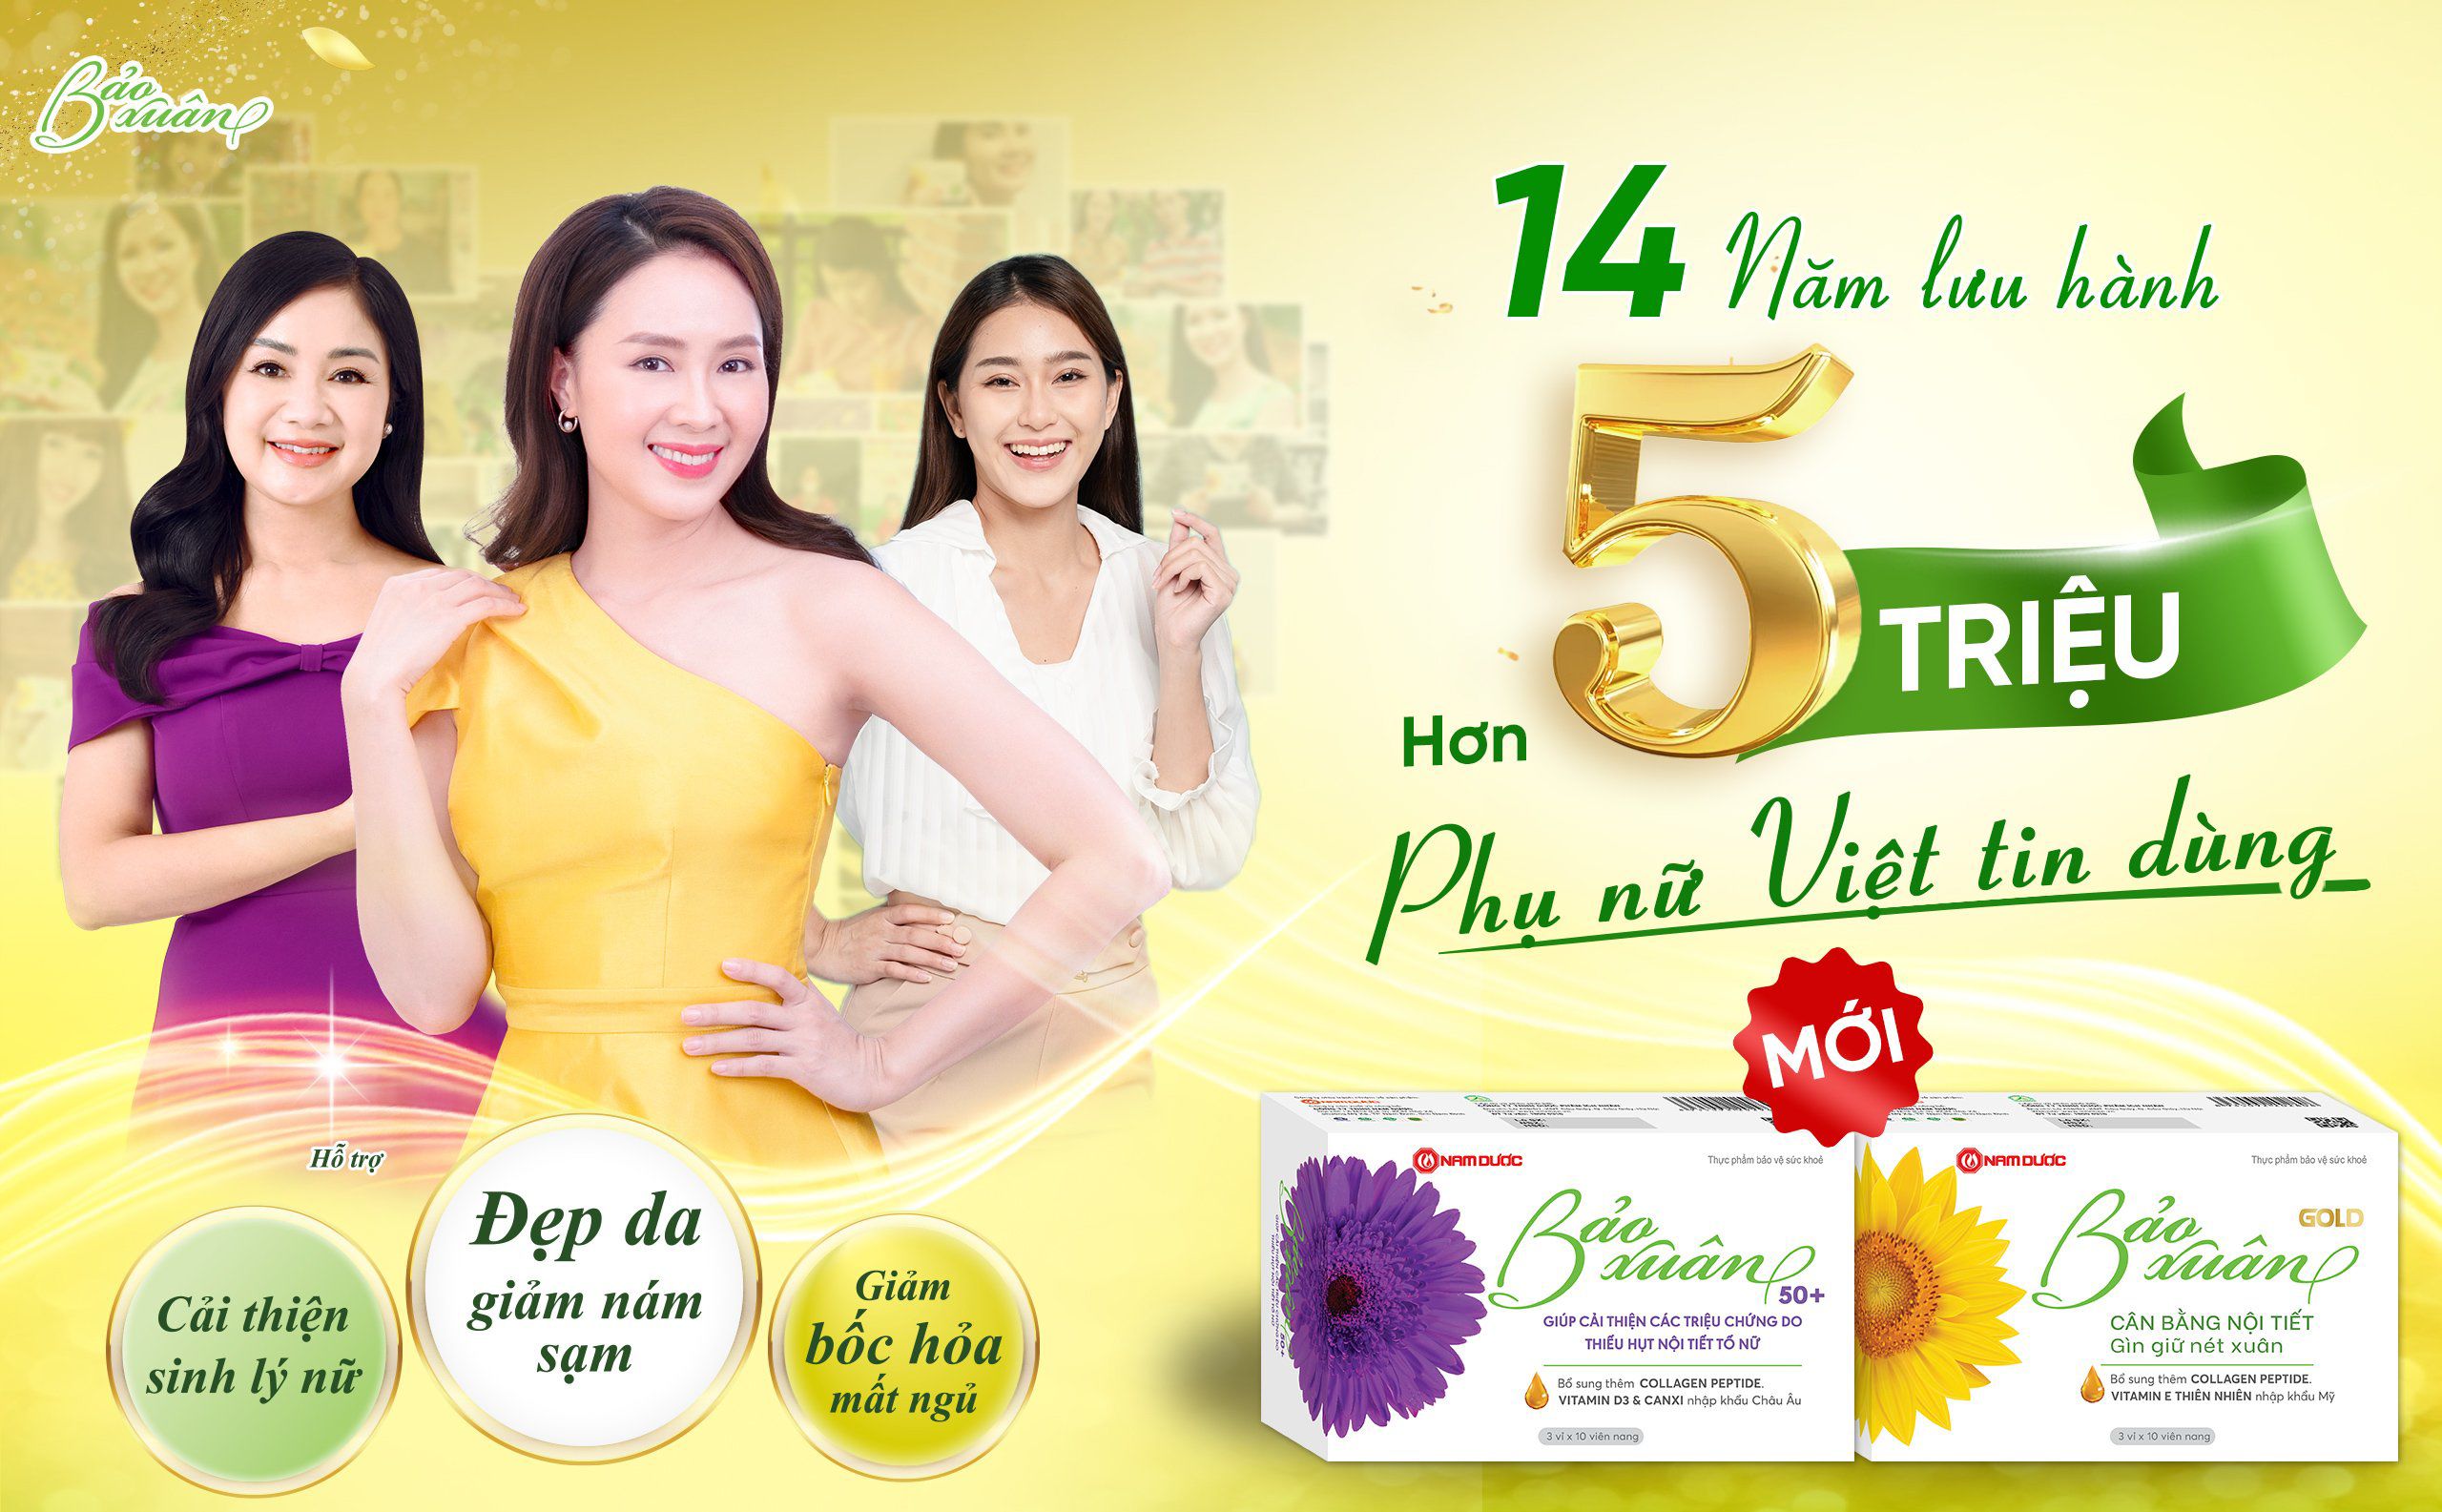 Bảo Xuân tự hào hành trình 14 năm với hơn 5 triệu phụ nữ Việt tin dùng.